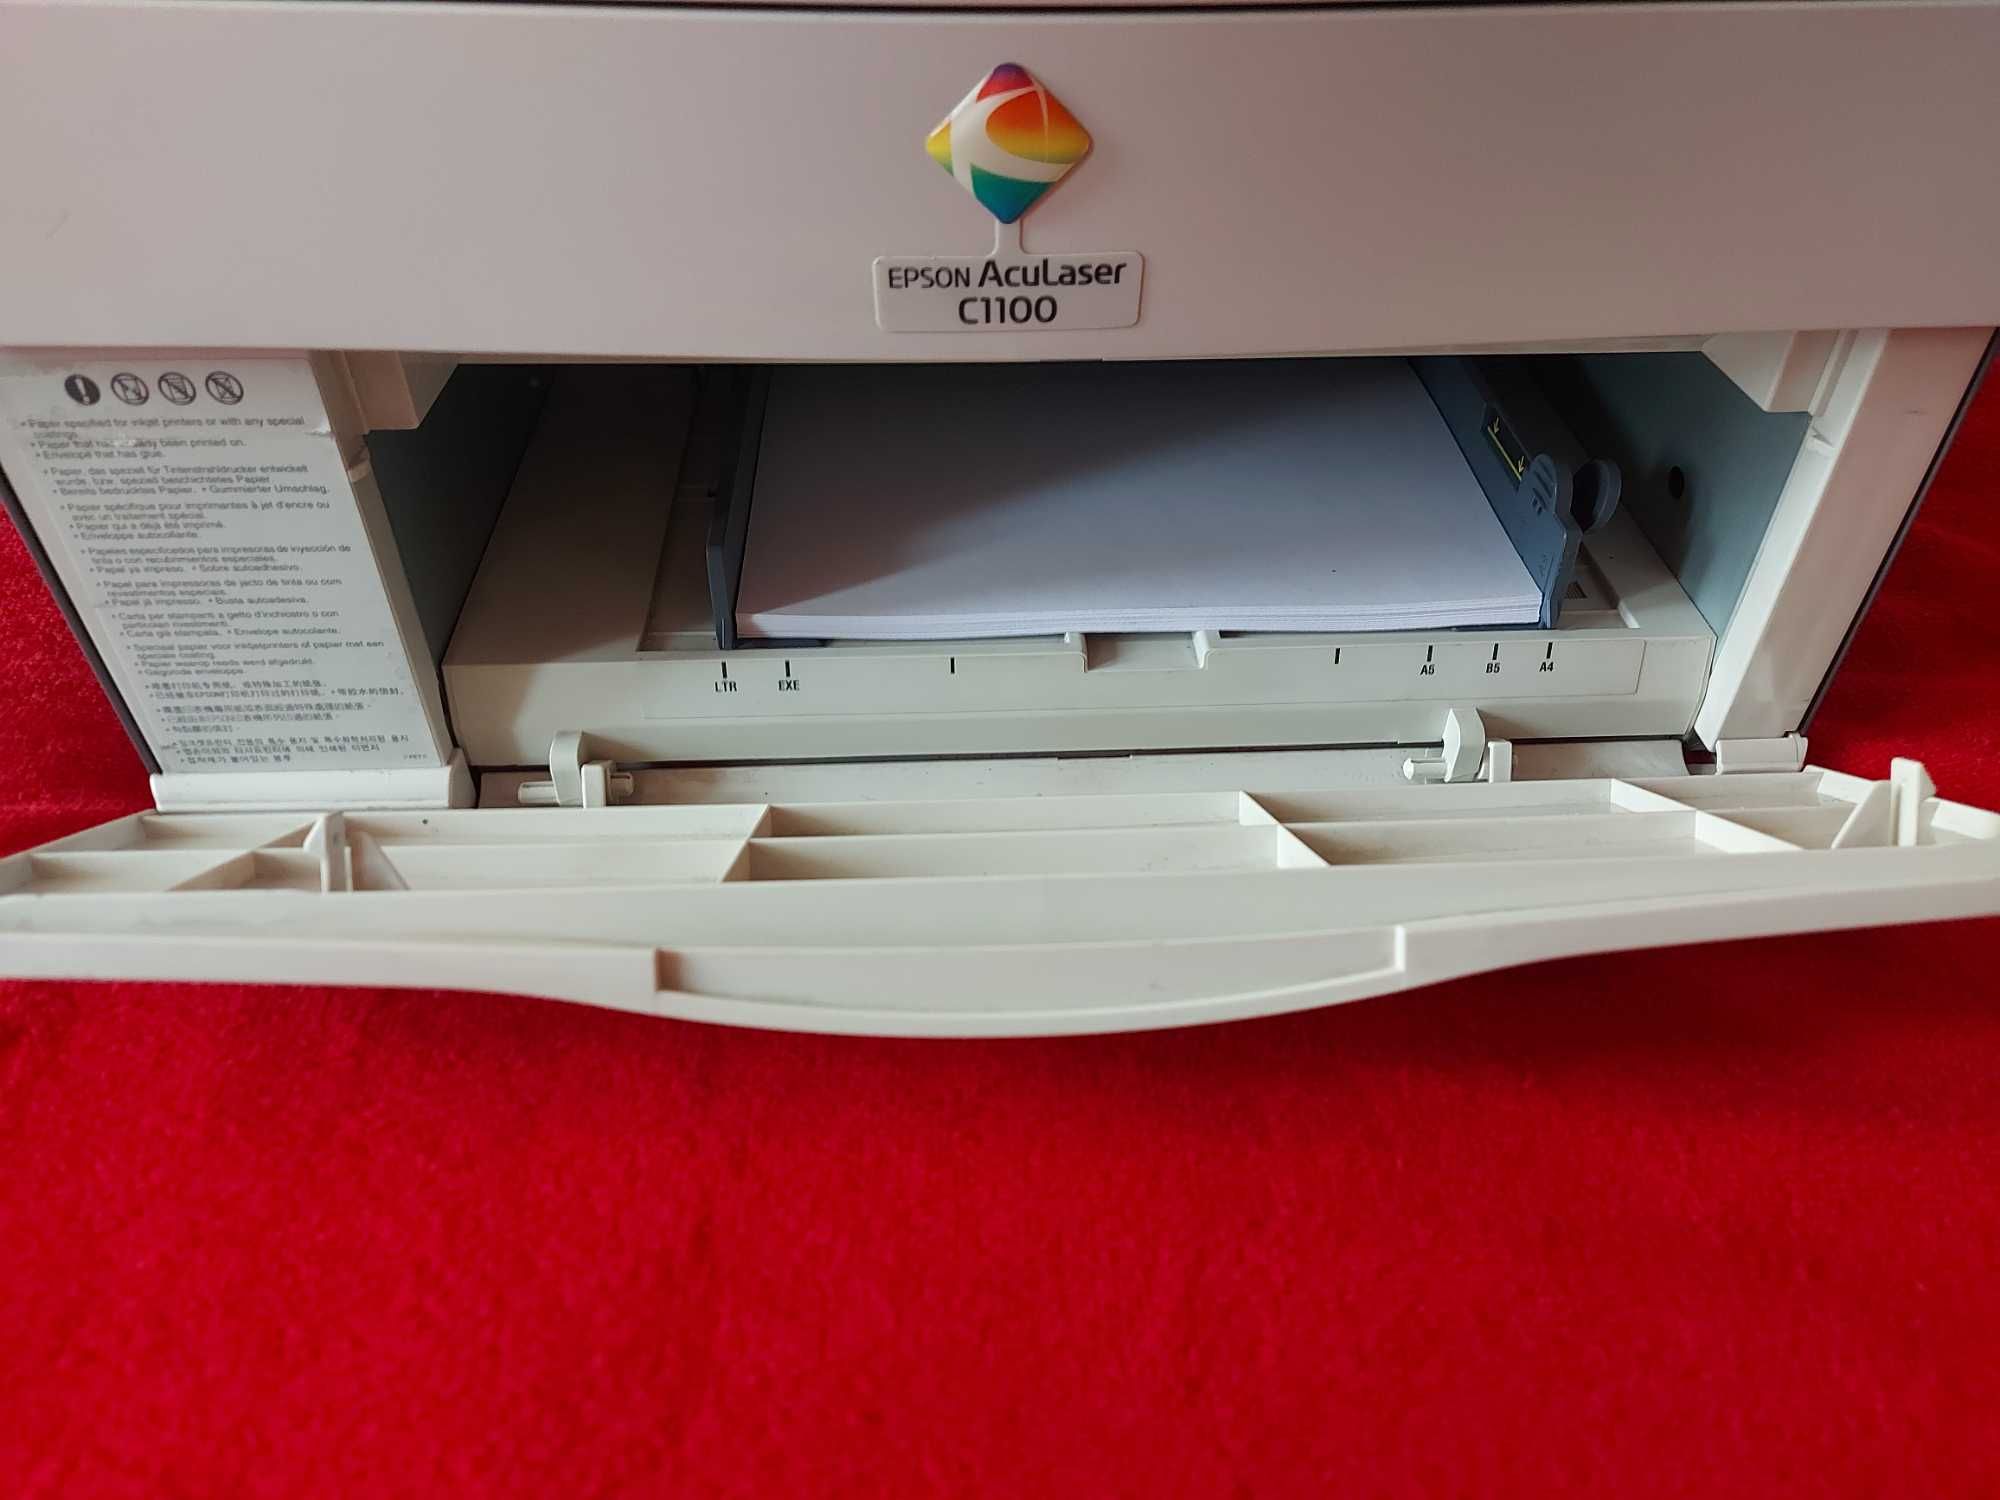 цветной лазерный принтер EPSON AcuLaser c1100 USB пробег 9600